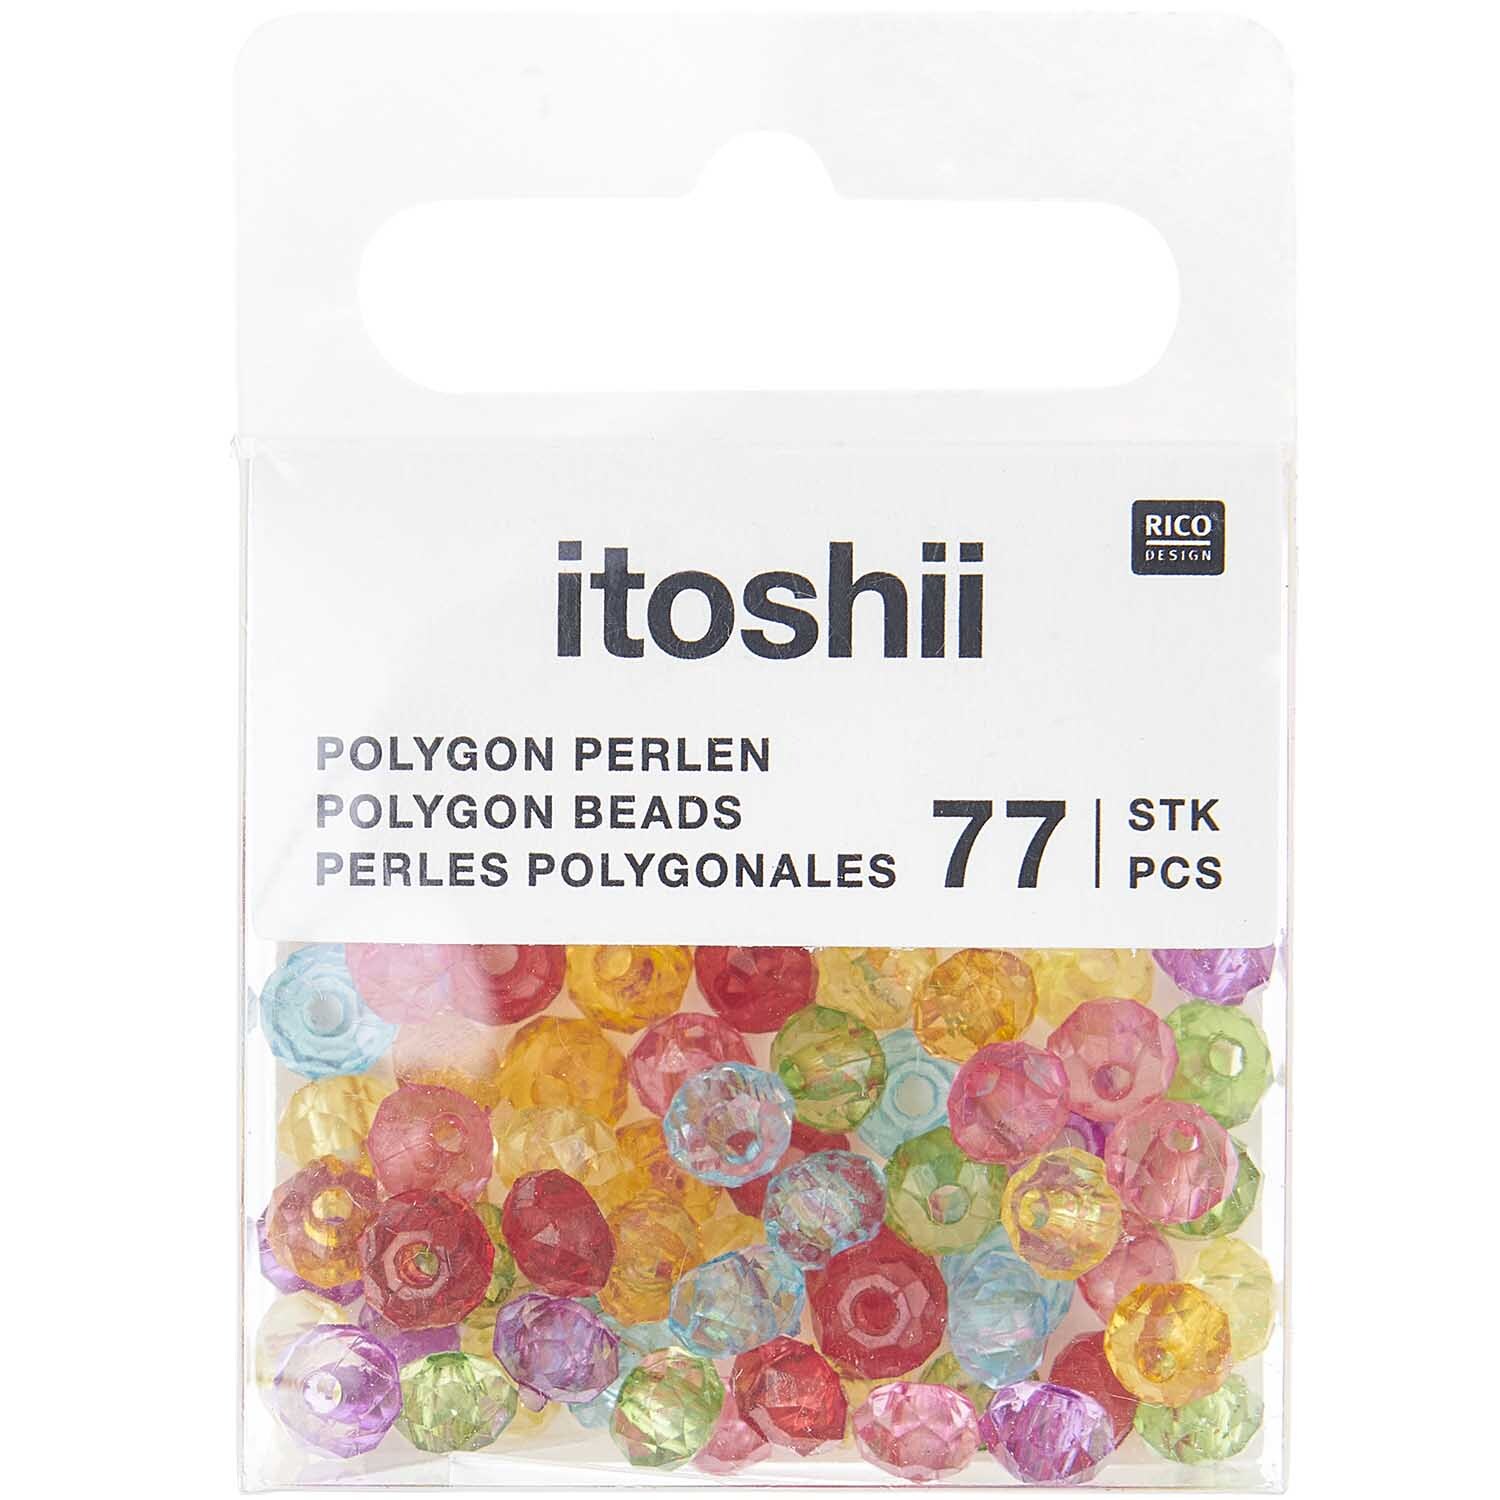 itoshii Polygon Perlen Regenbogen